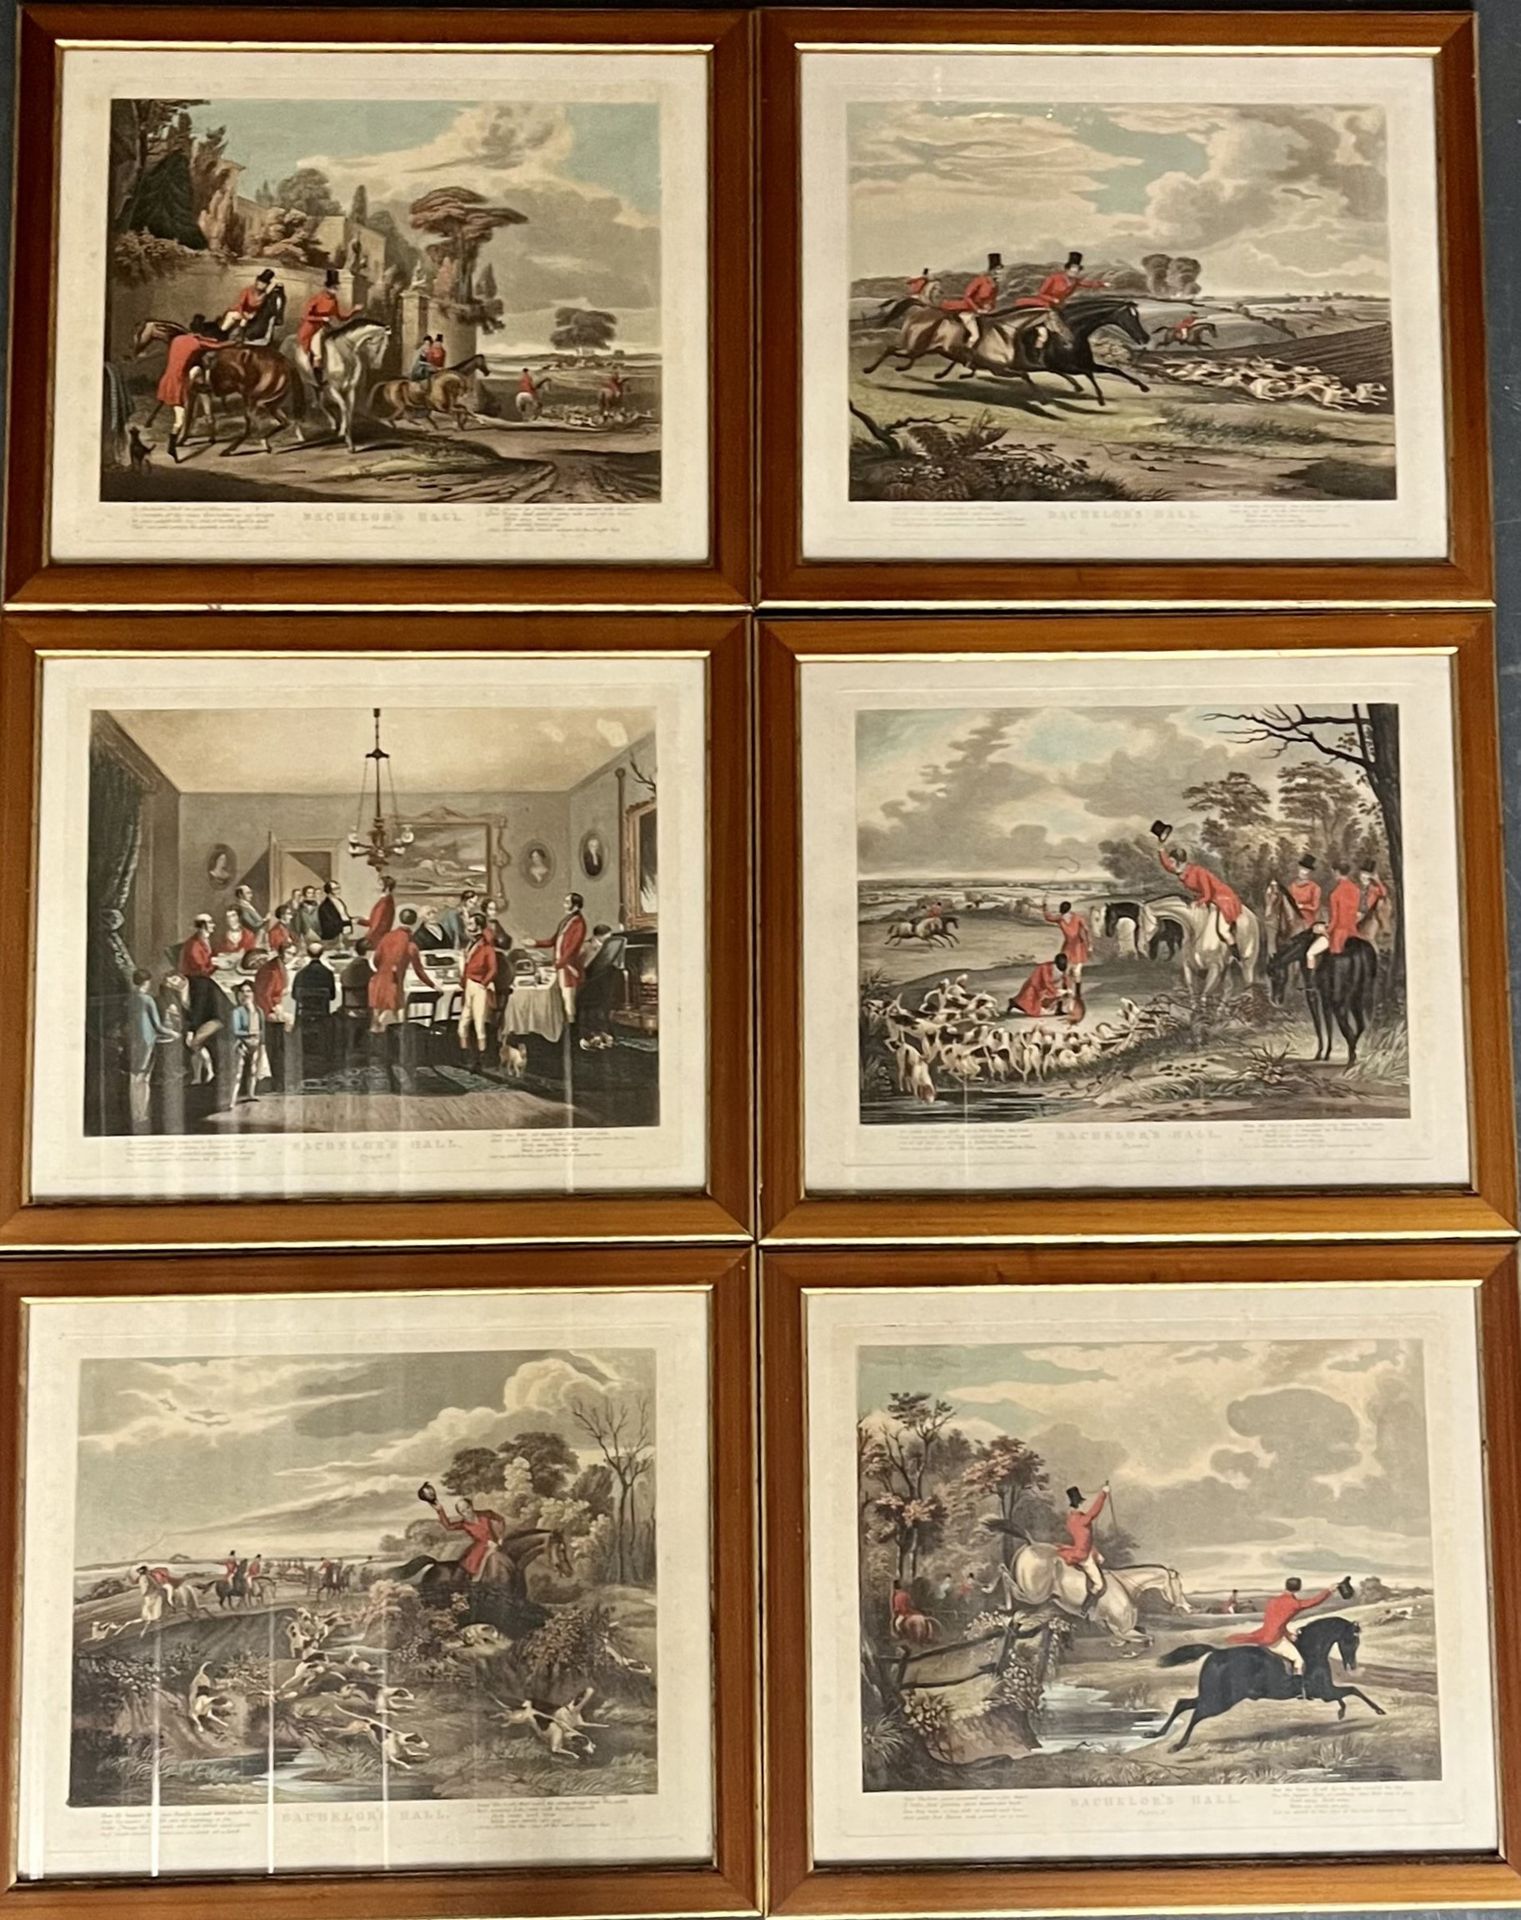 Angleterre du XIXe siècle "Scenes de chasse a courre"
六幅彩色版画组成的套房